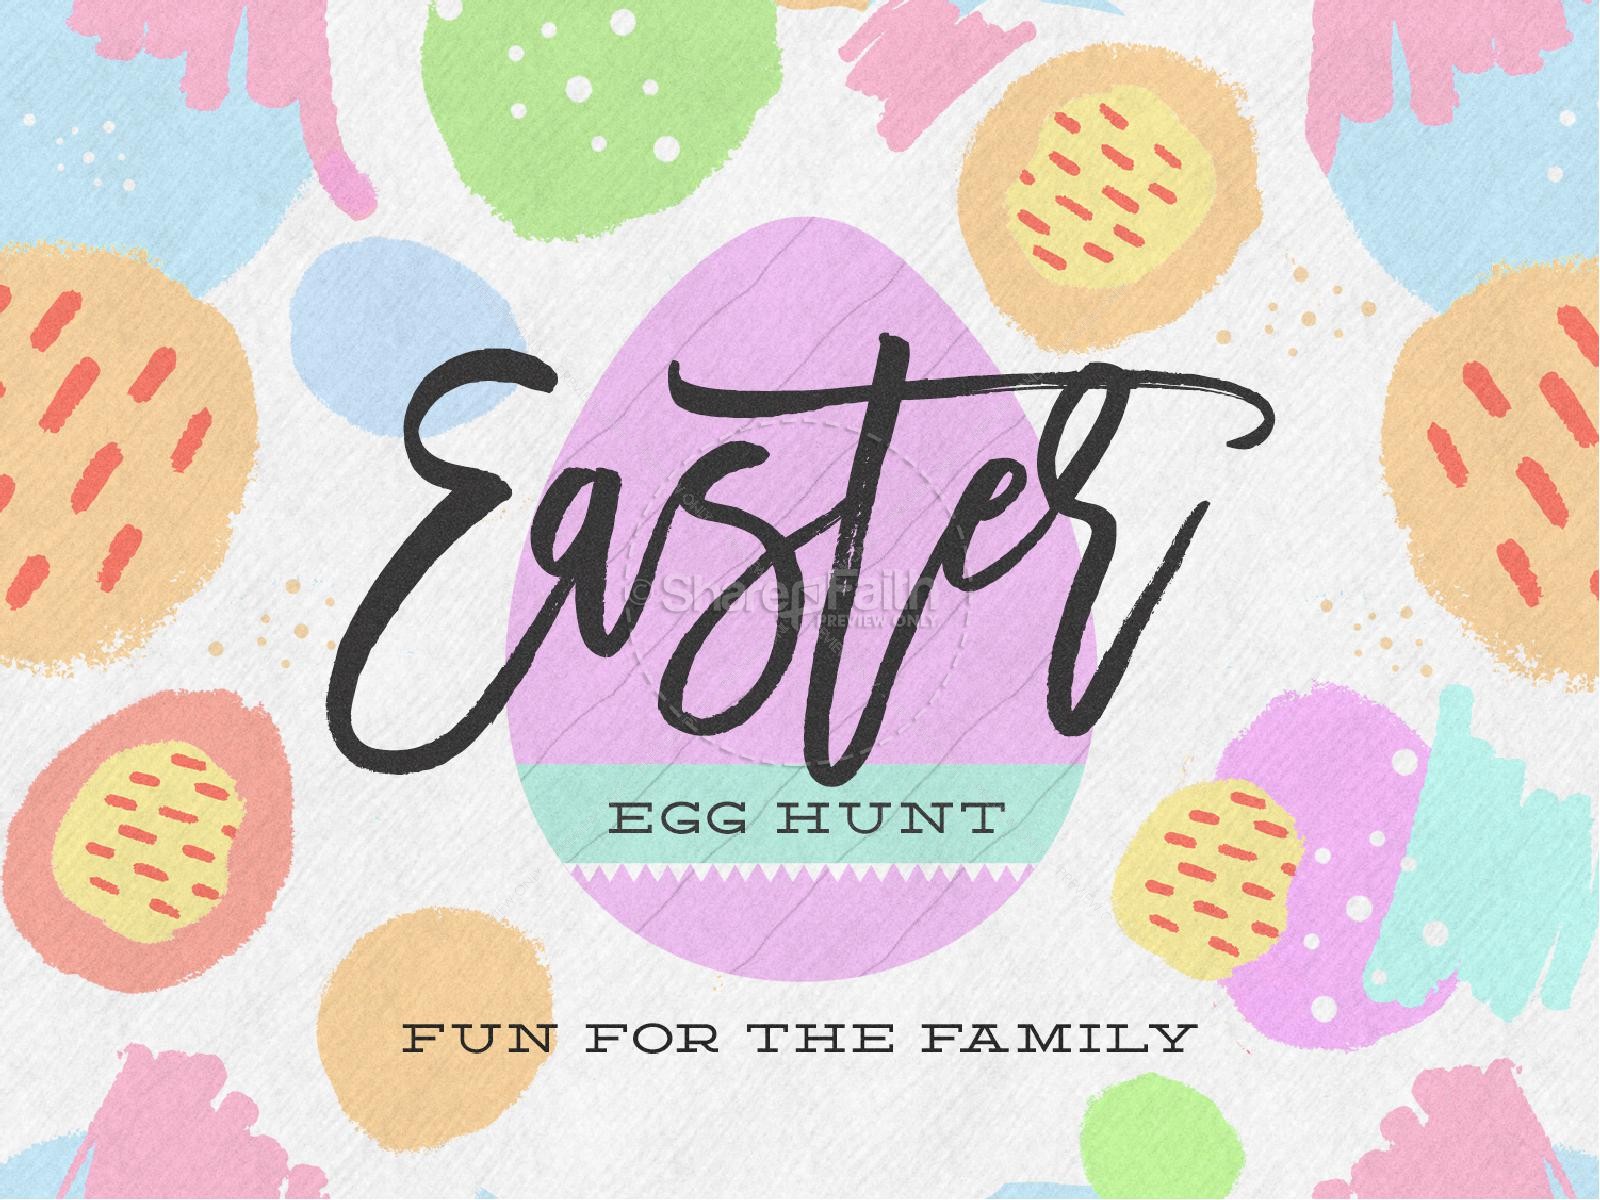 Easter Egg Hunt Pastel Church PowerPoint – ShareFaith Media